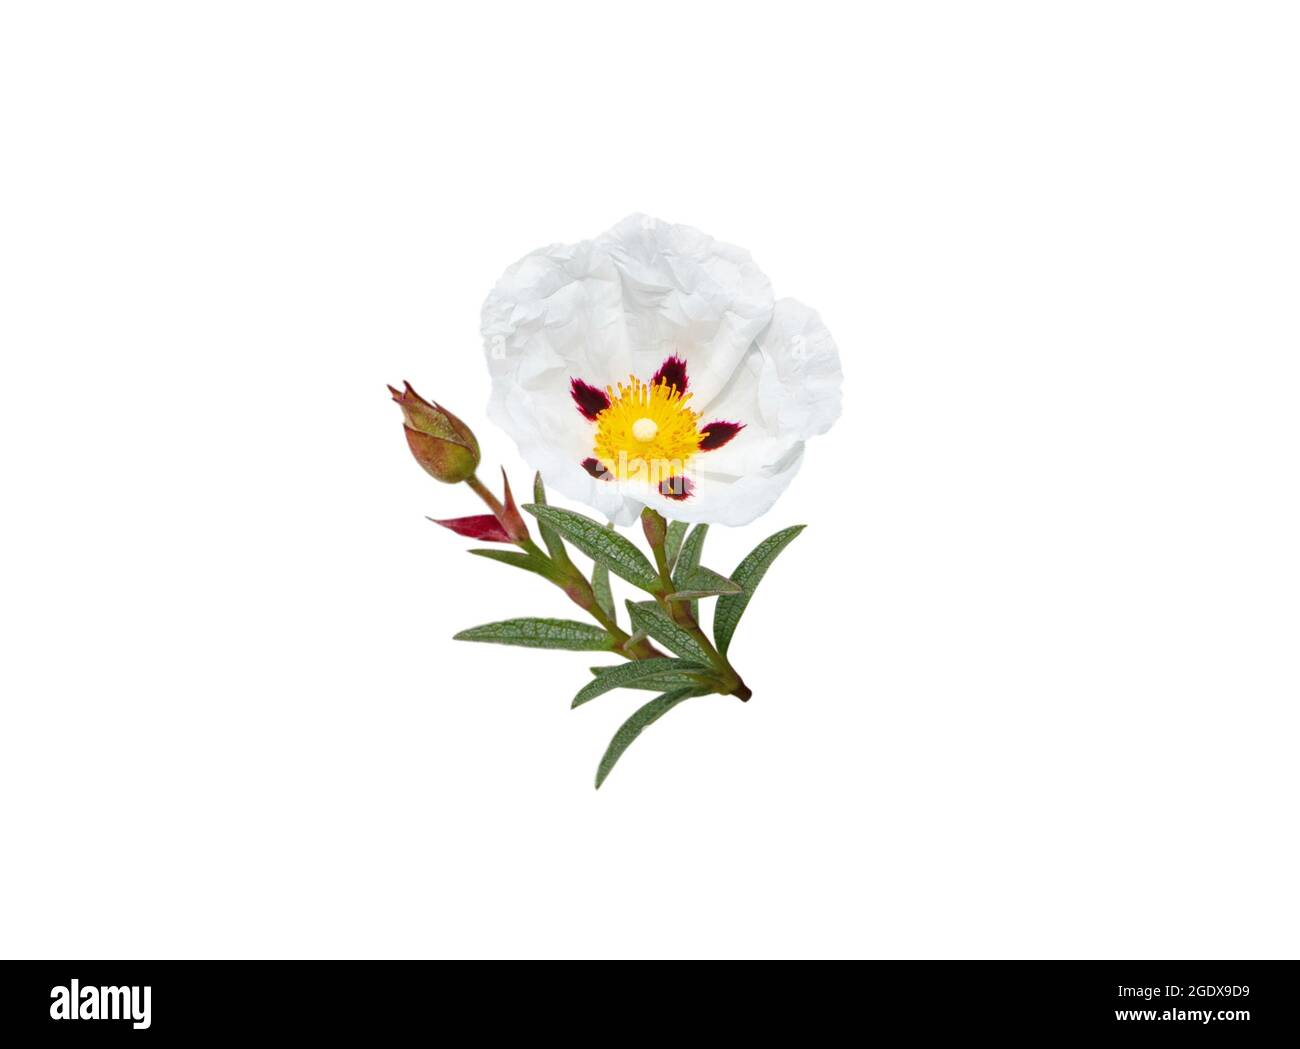 Labdanum Blume isoliert auf weiß. Cistus ladanifer oder Kaugummi-Steinrose- Pflanze Stockfotografie - Alamy